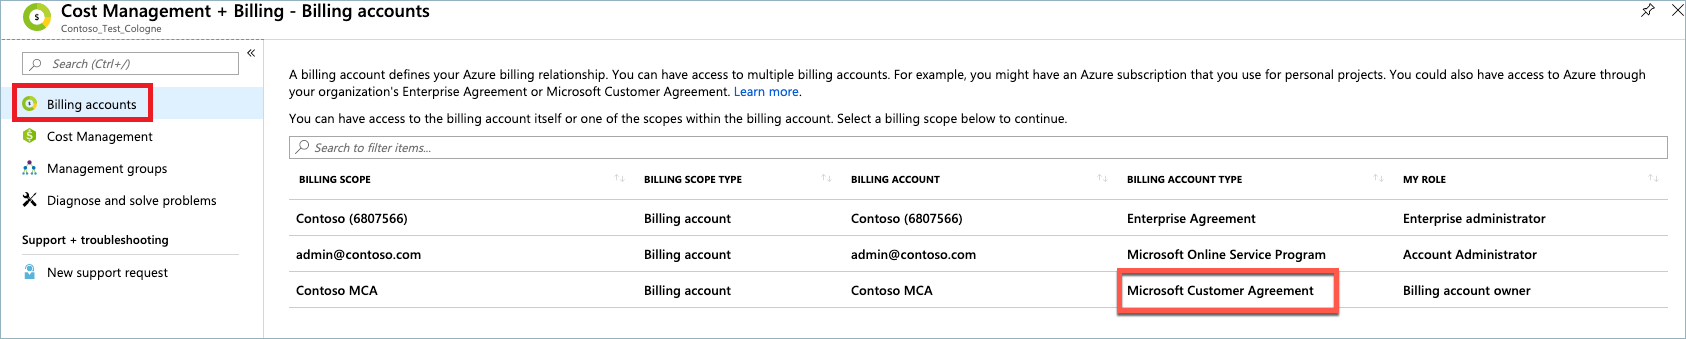 청구 계정 페이지의 Microsoft 고객 계약 유형을 보여 주는 스크린샷.